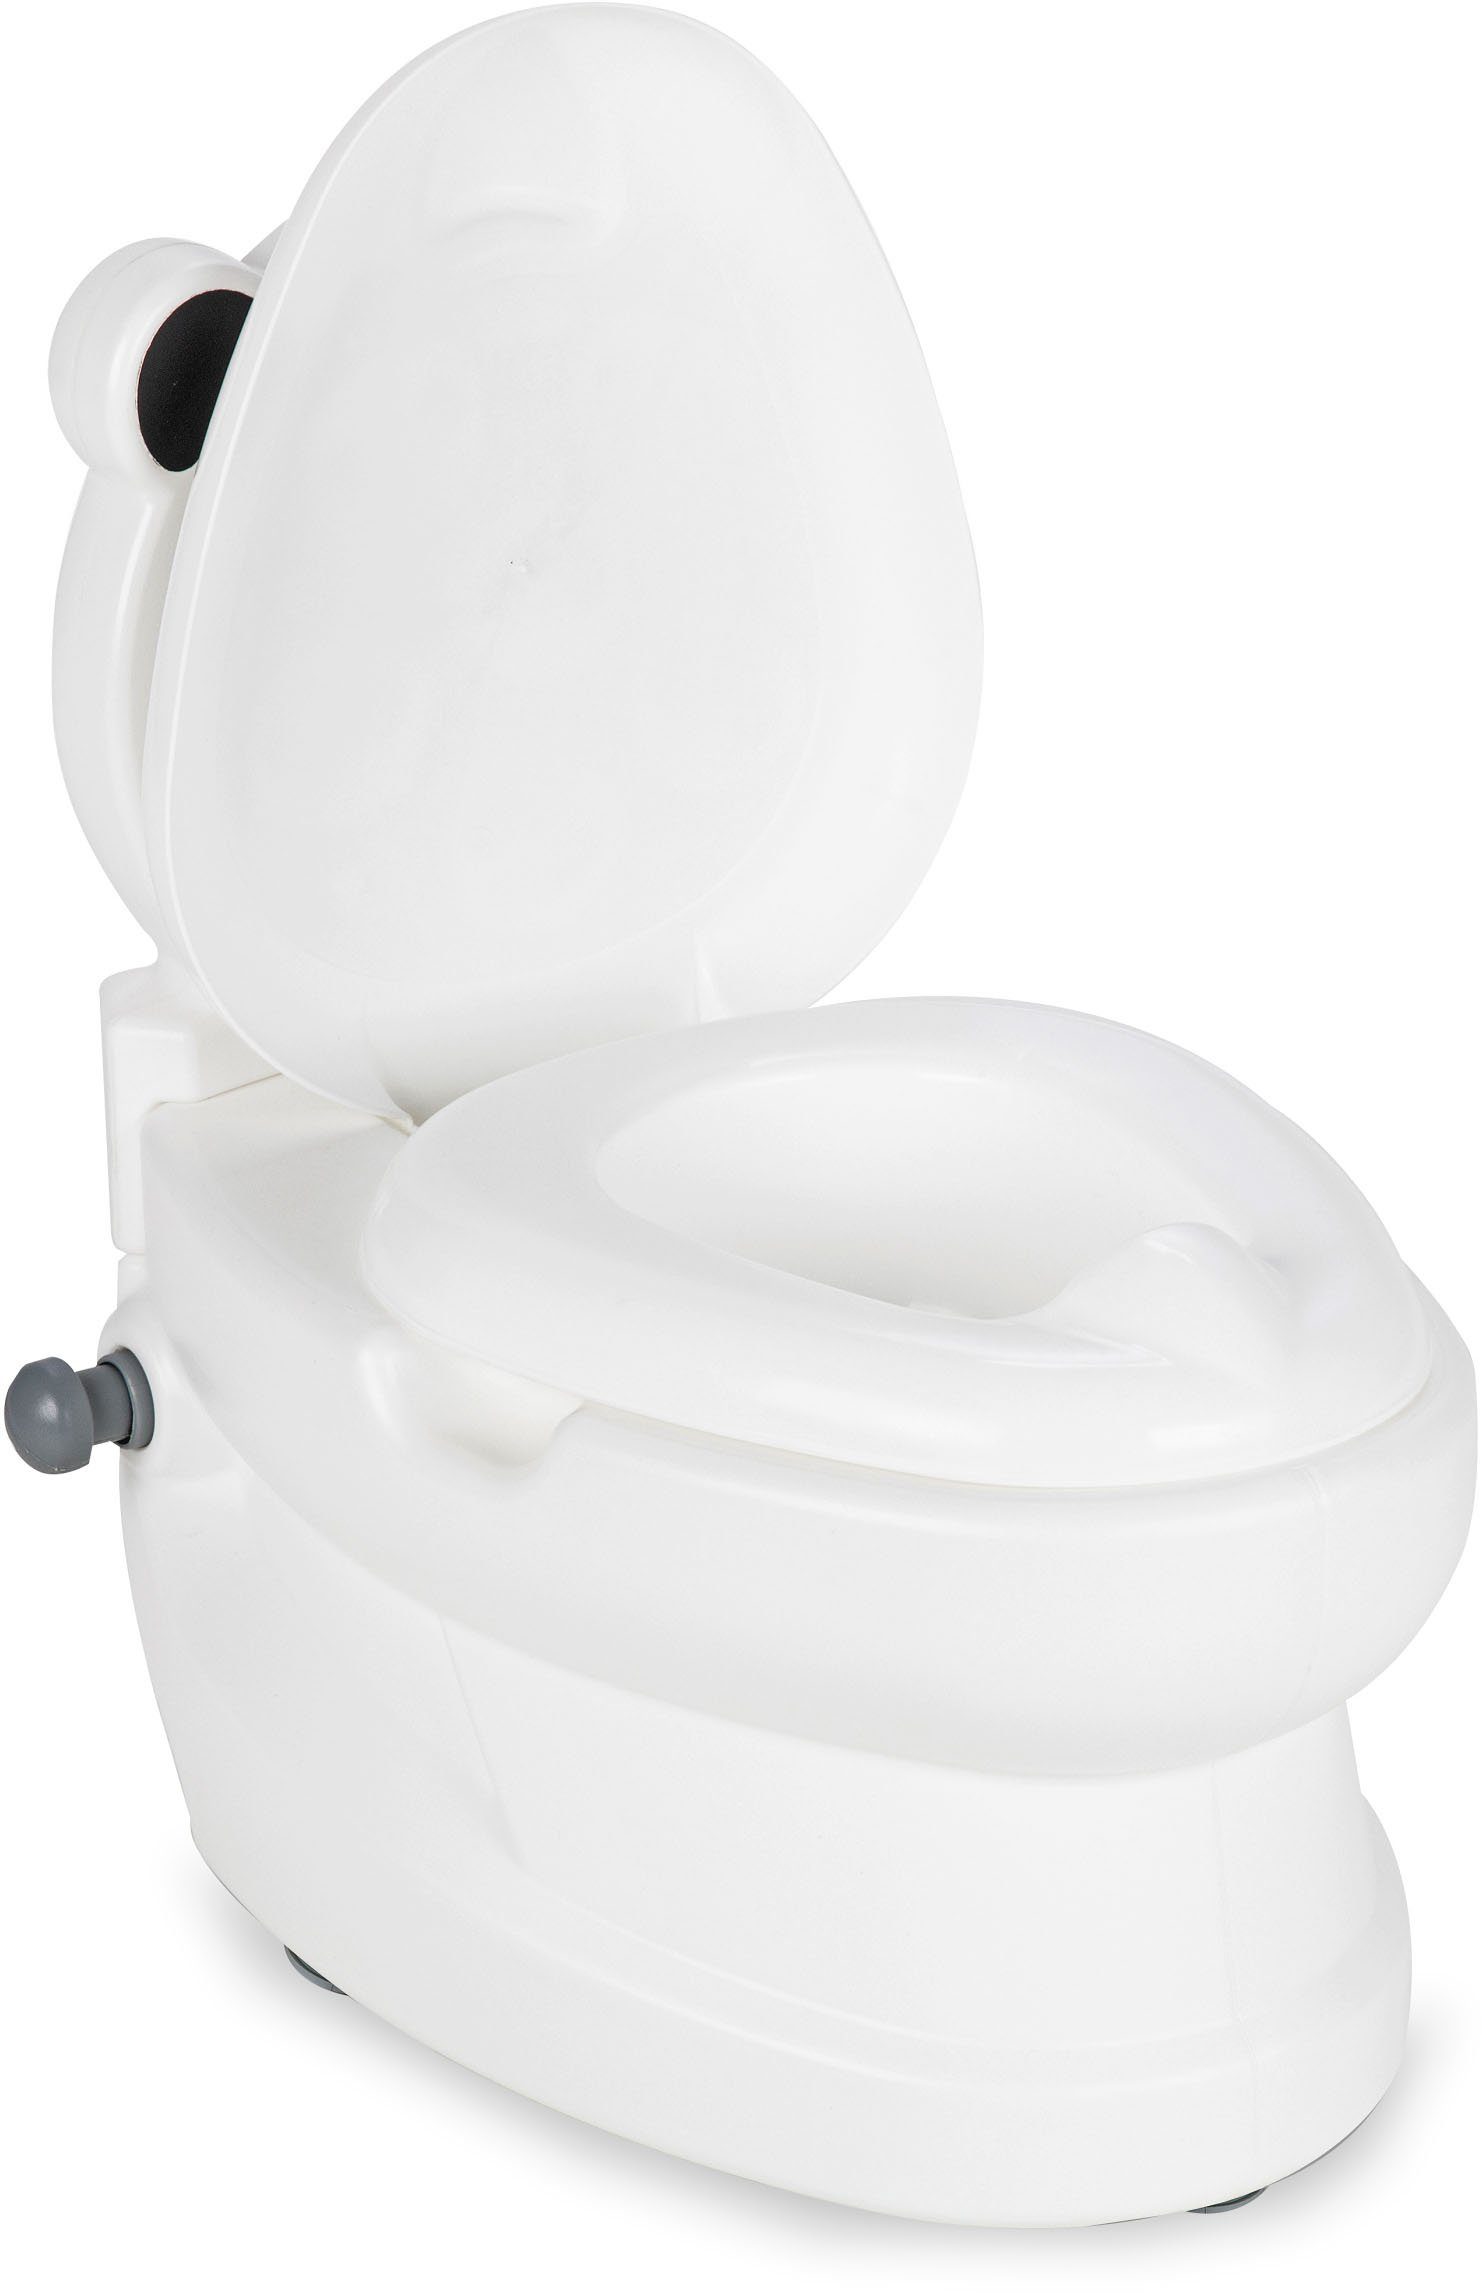 Toilettenpapierhalter Panda, Toilette, Spülsound mit Jamara Toilettentrainer Meine und kleine